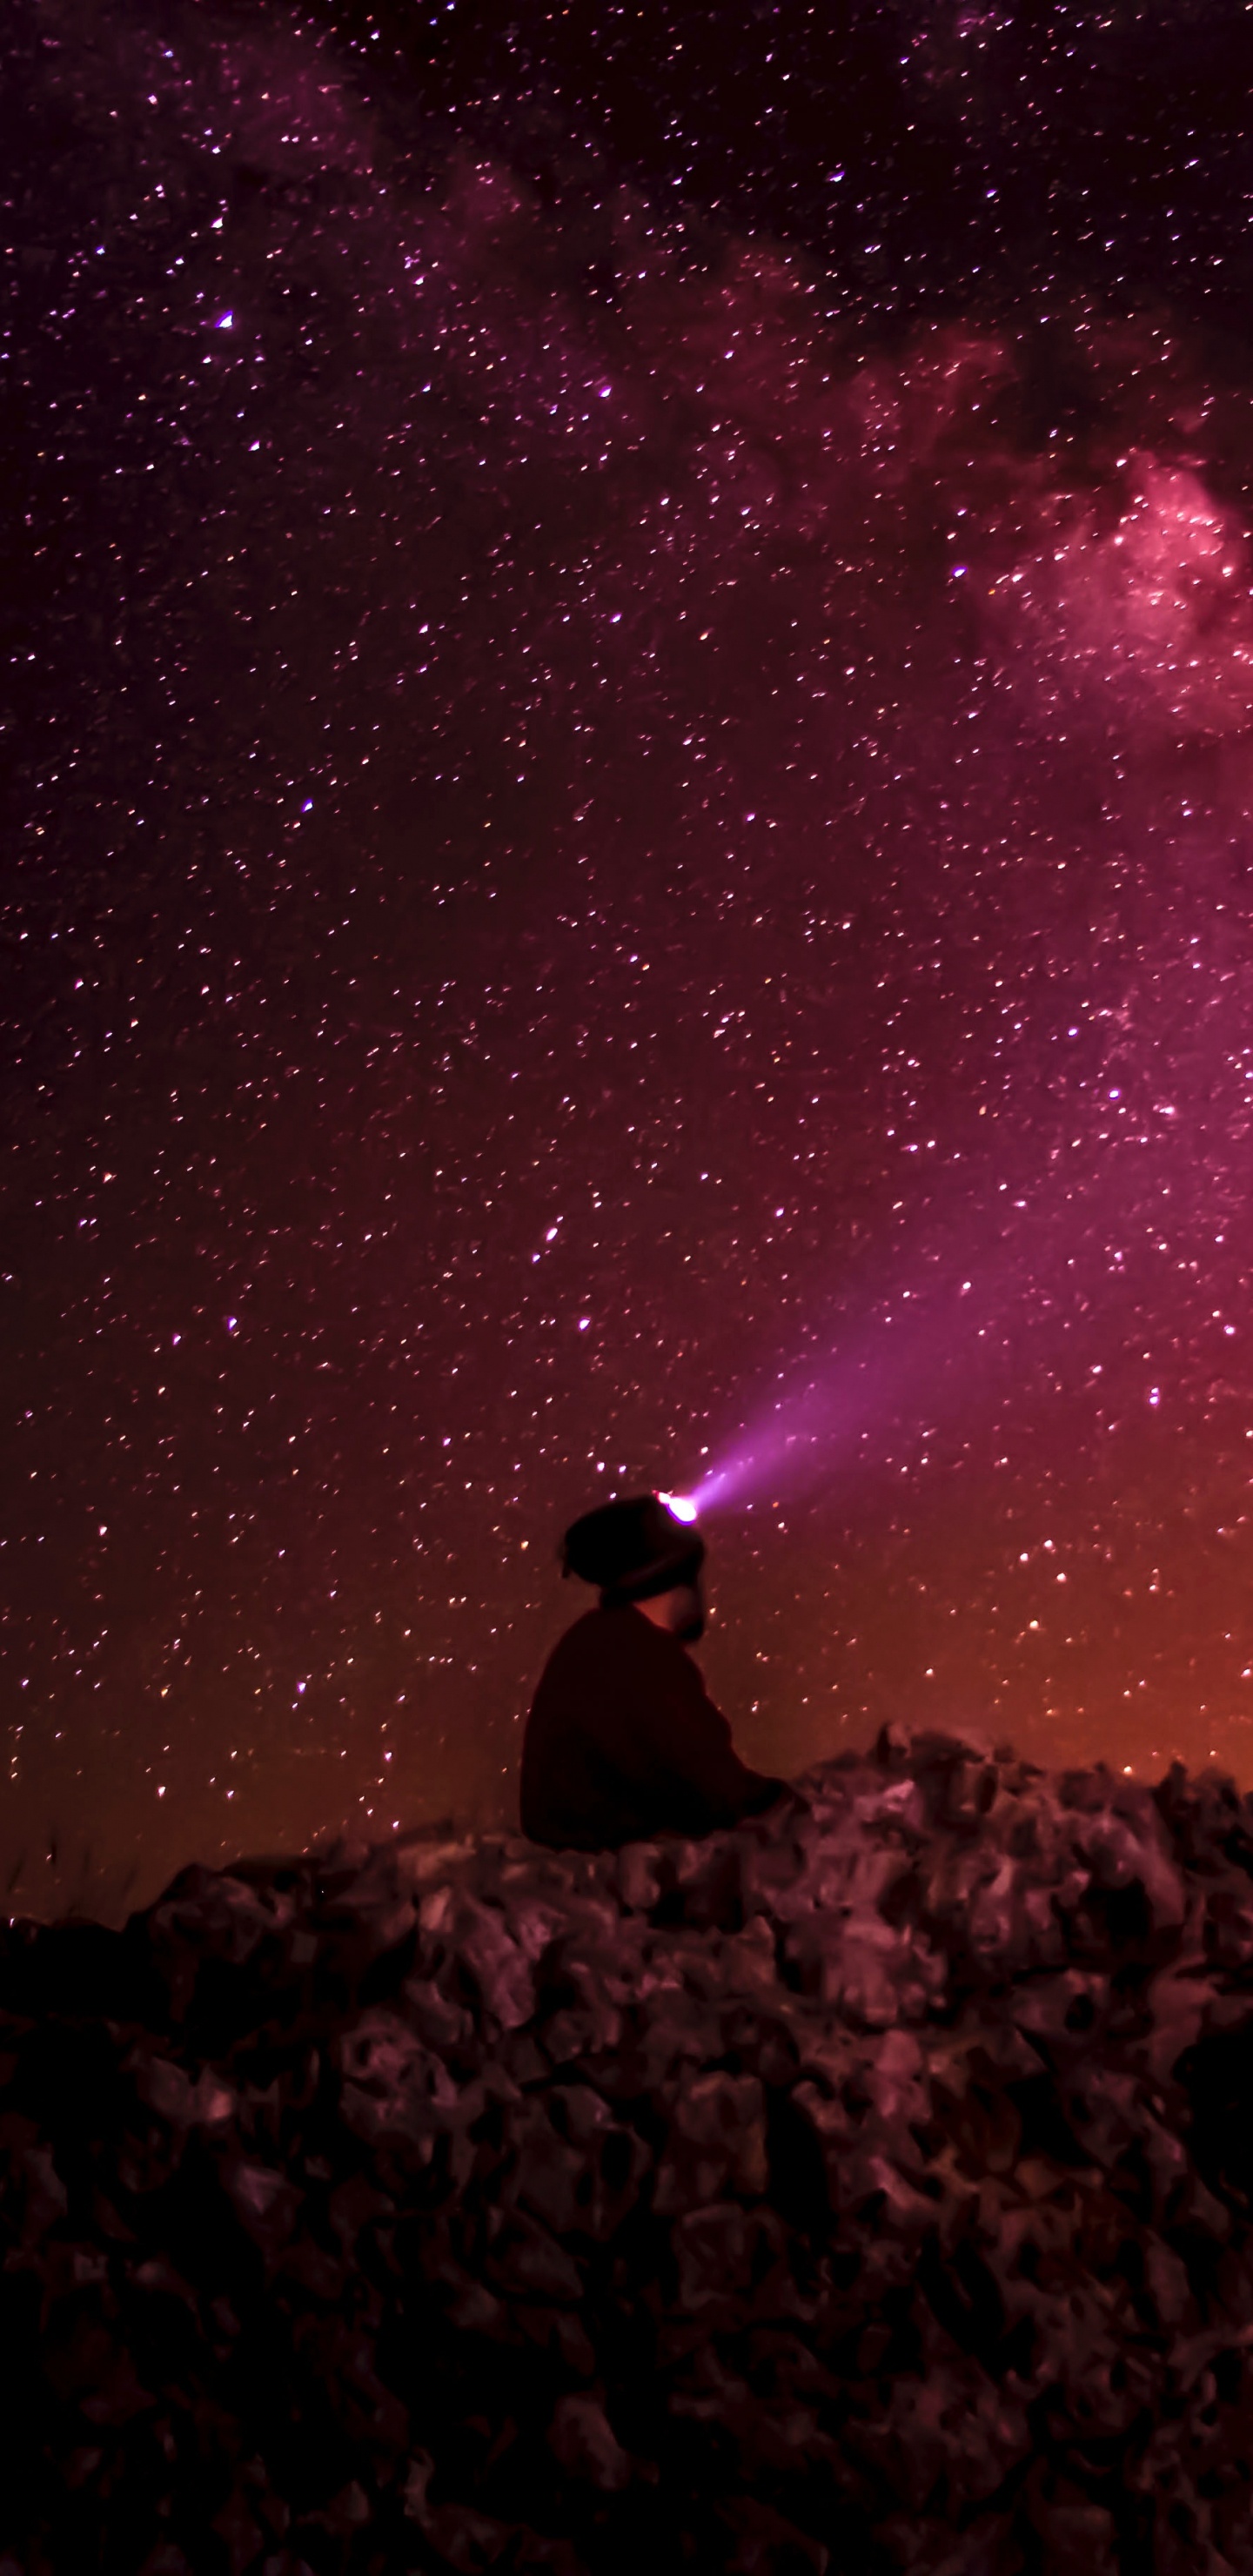 Hombre Sentado Sobre Una Roca Bajo la Noche Estrellada. Wallpaper in 1440x2960 Resolution